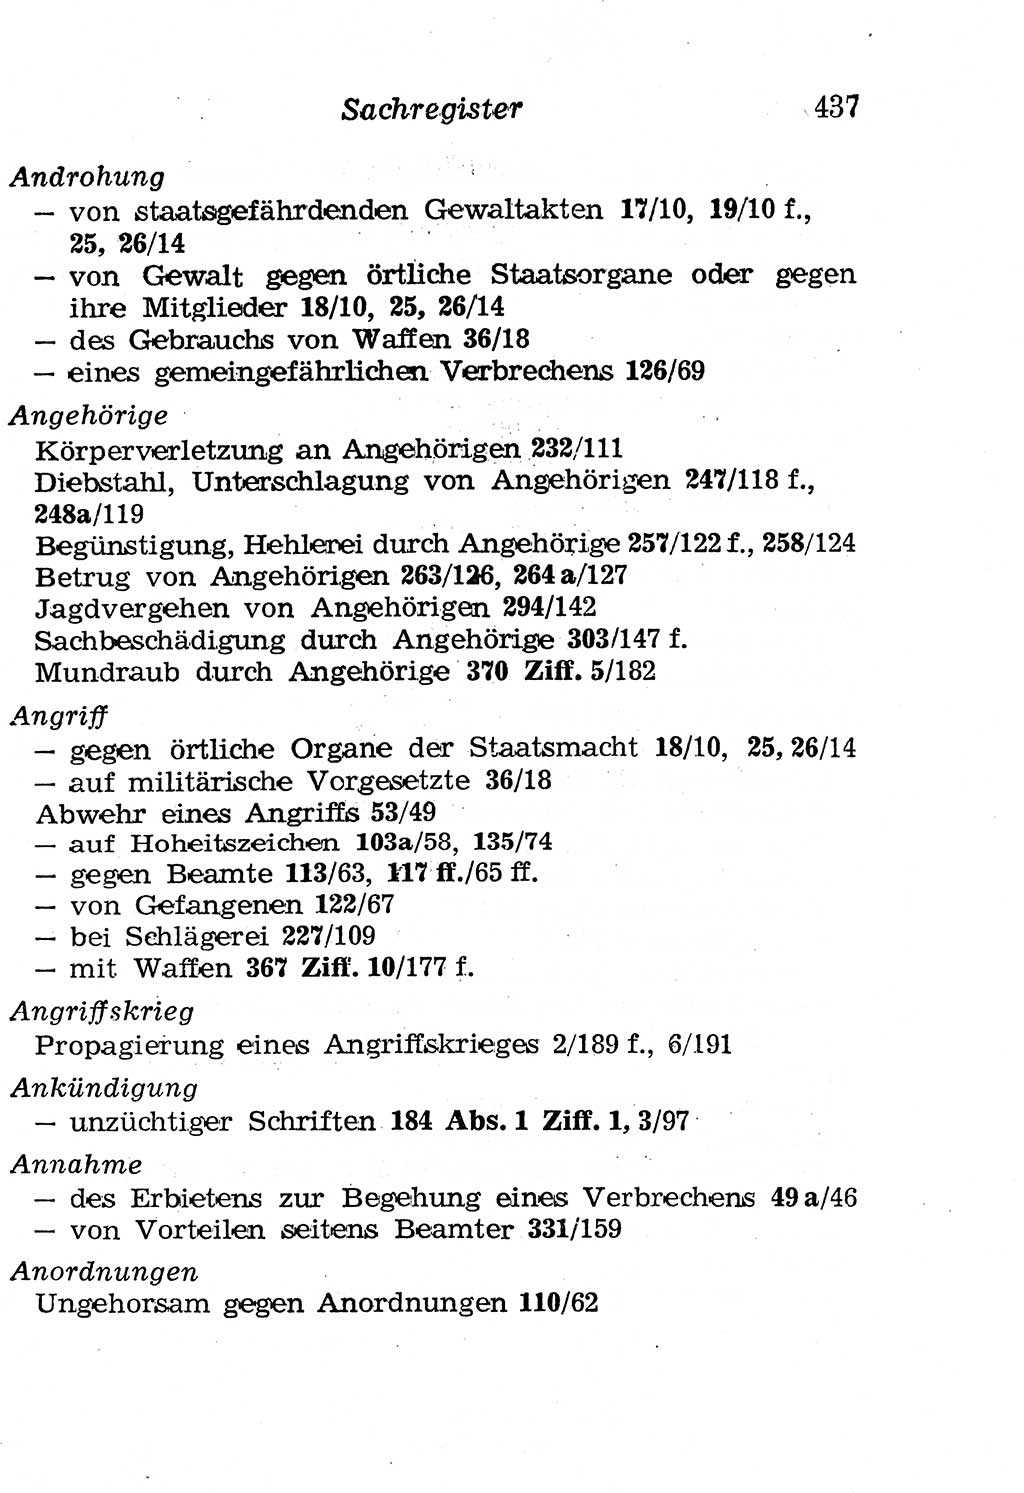 Strafgesetzbuch (StGB) und andere Strafgesetze [Deutsche Demokratische Republik (DDR)] 1958, Seite 437 (StGB Strafges. DDR 1958, S. 437)